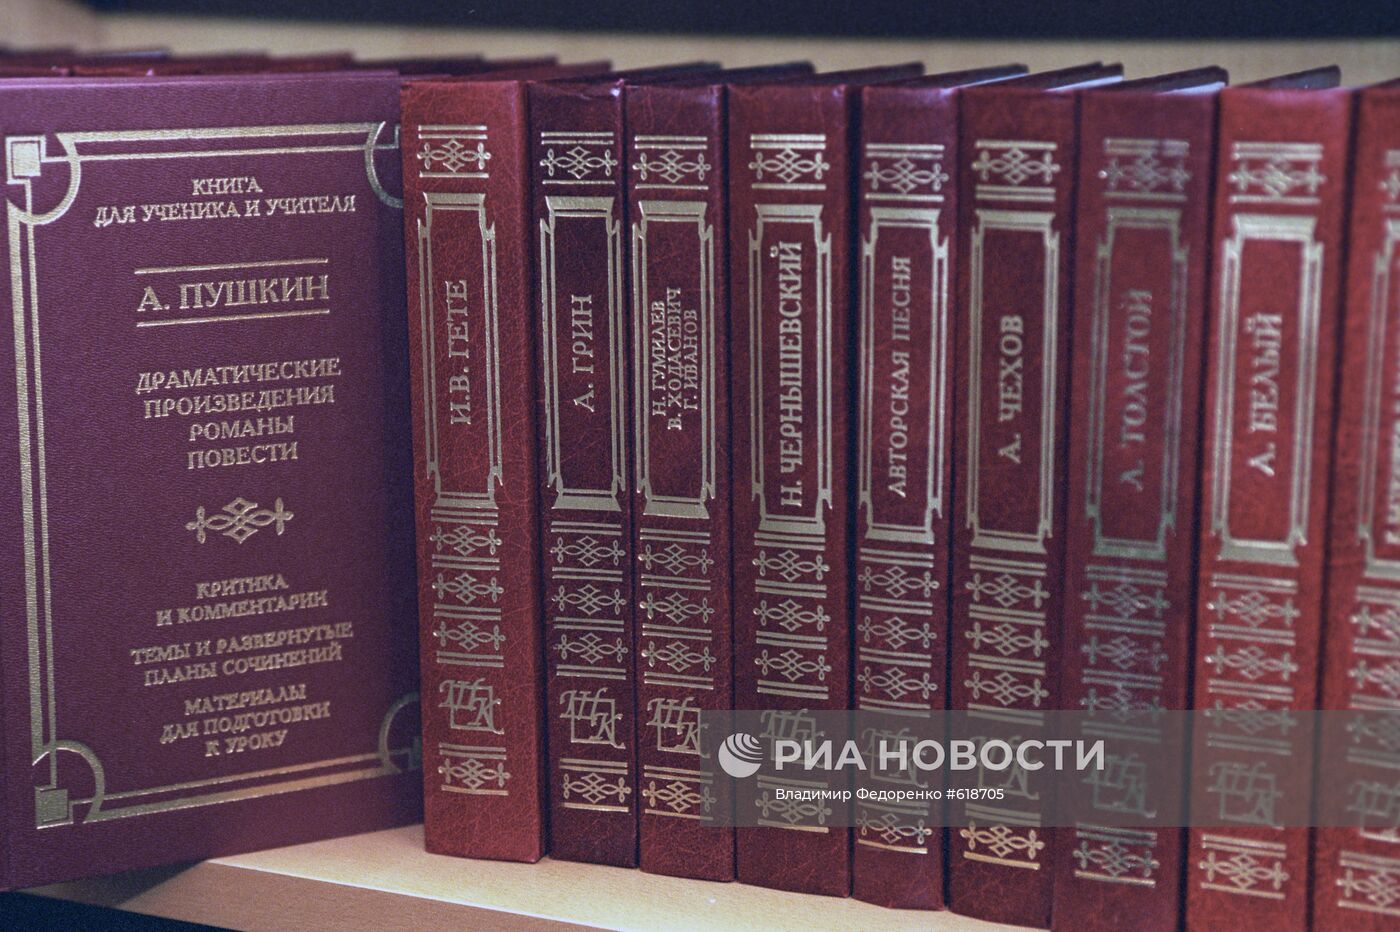 Проект "Библиотека Культуры" в Госдуме РФ